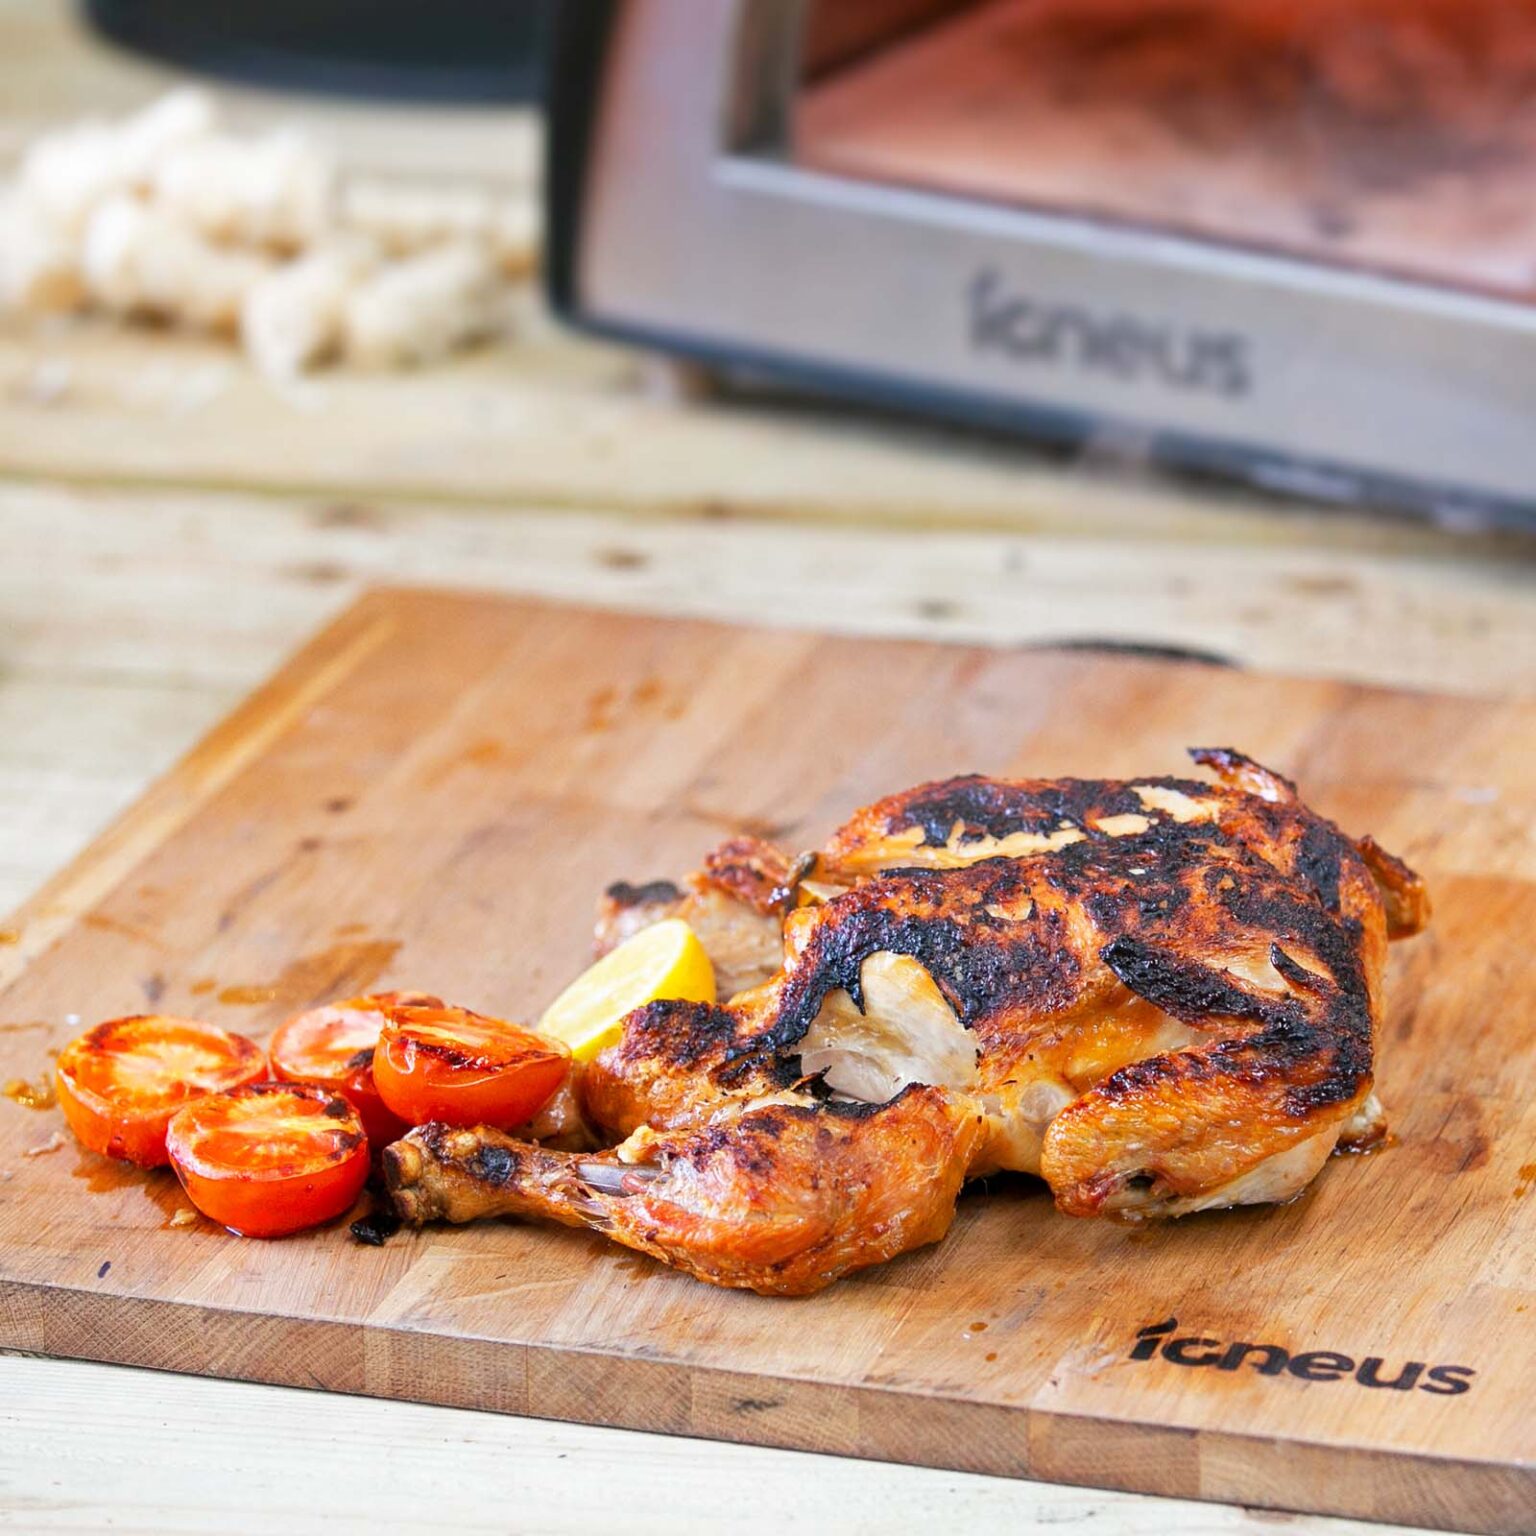 Igneus Pizza Prep Board - Roast Chicken